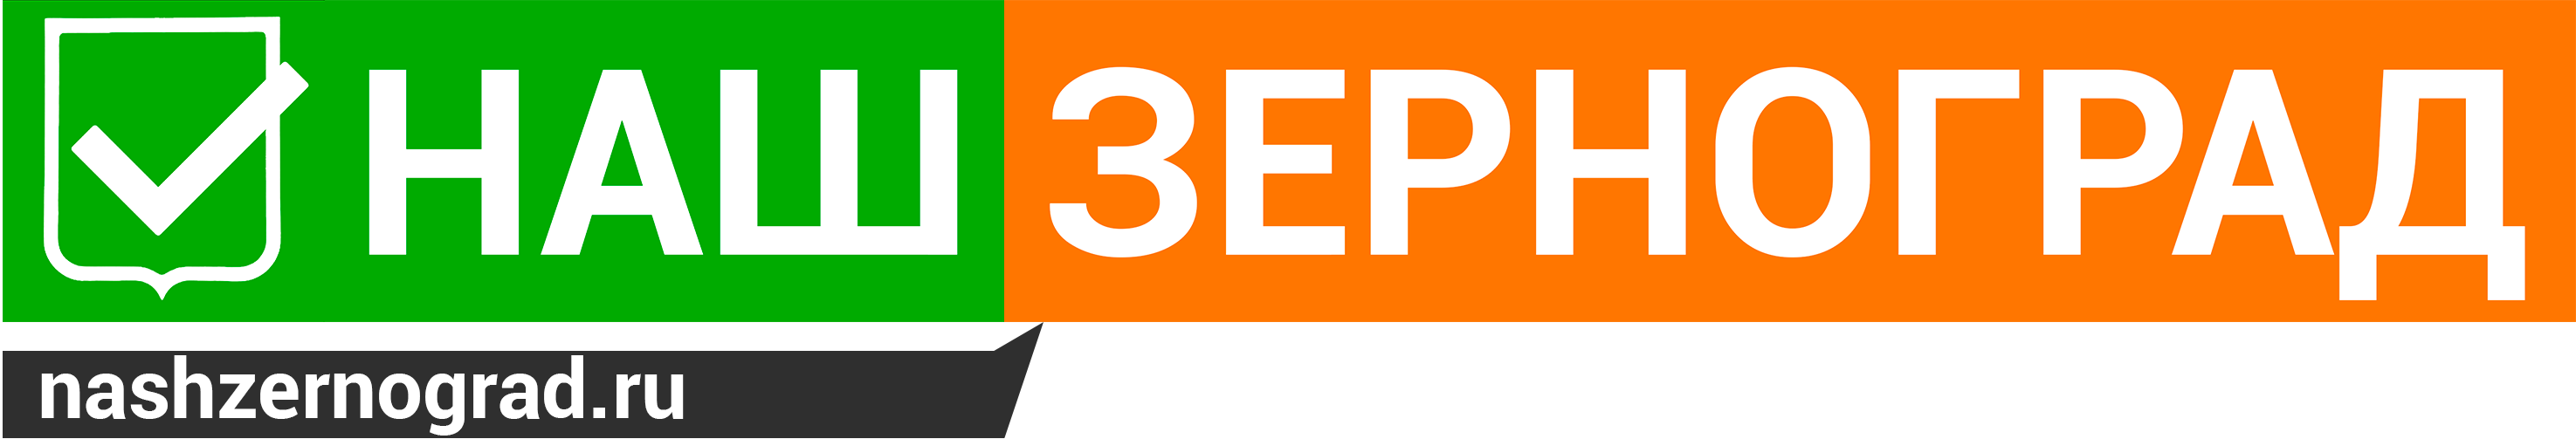 Logo_Nash_Zernograd_2017(1).png